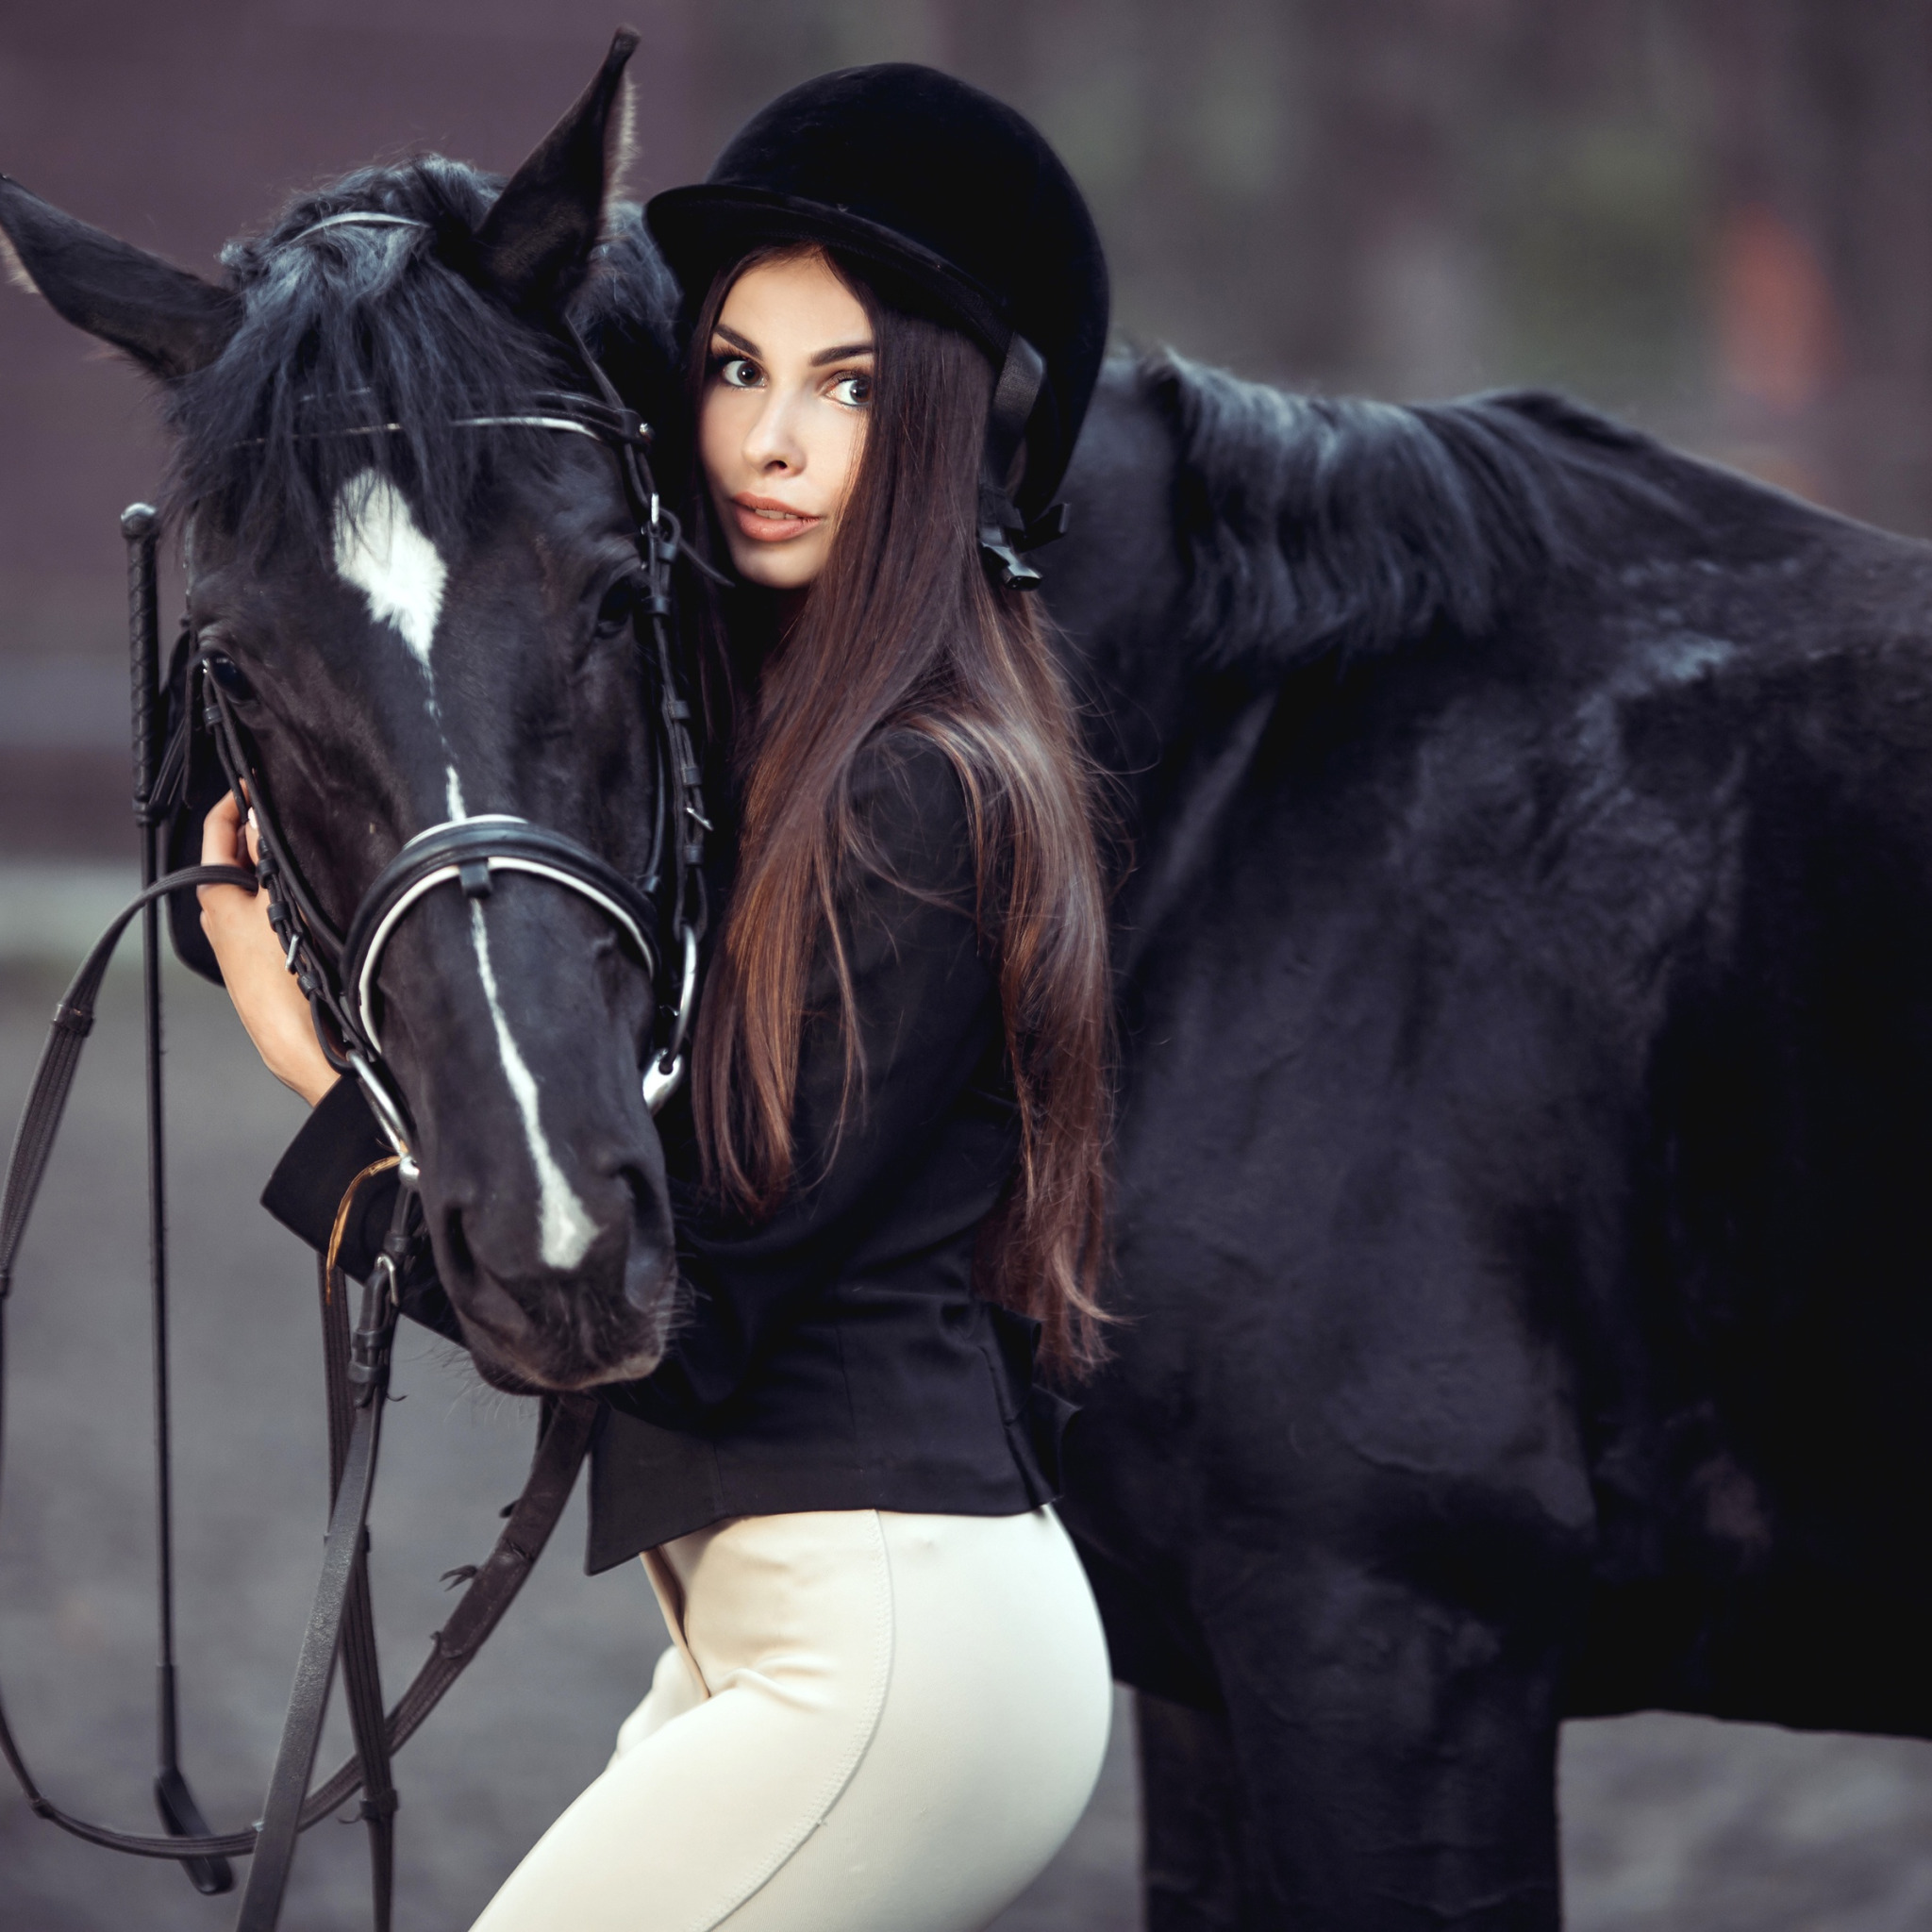 Фото Лошадей С Девушкой Скачать